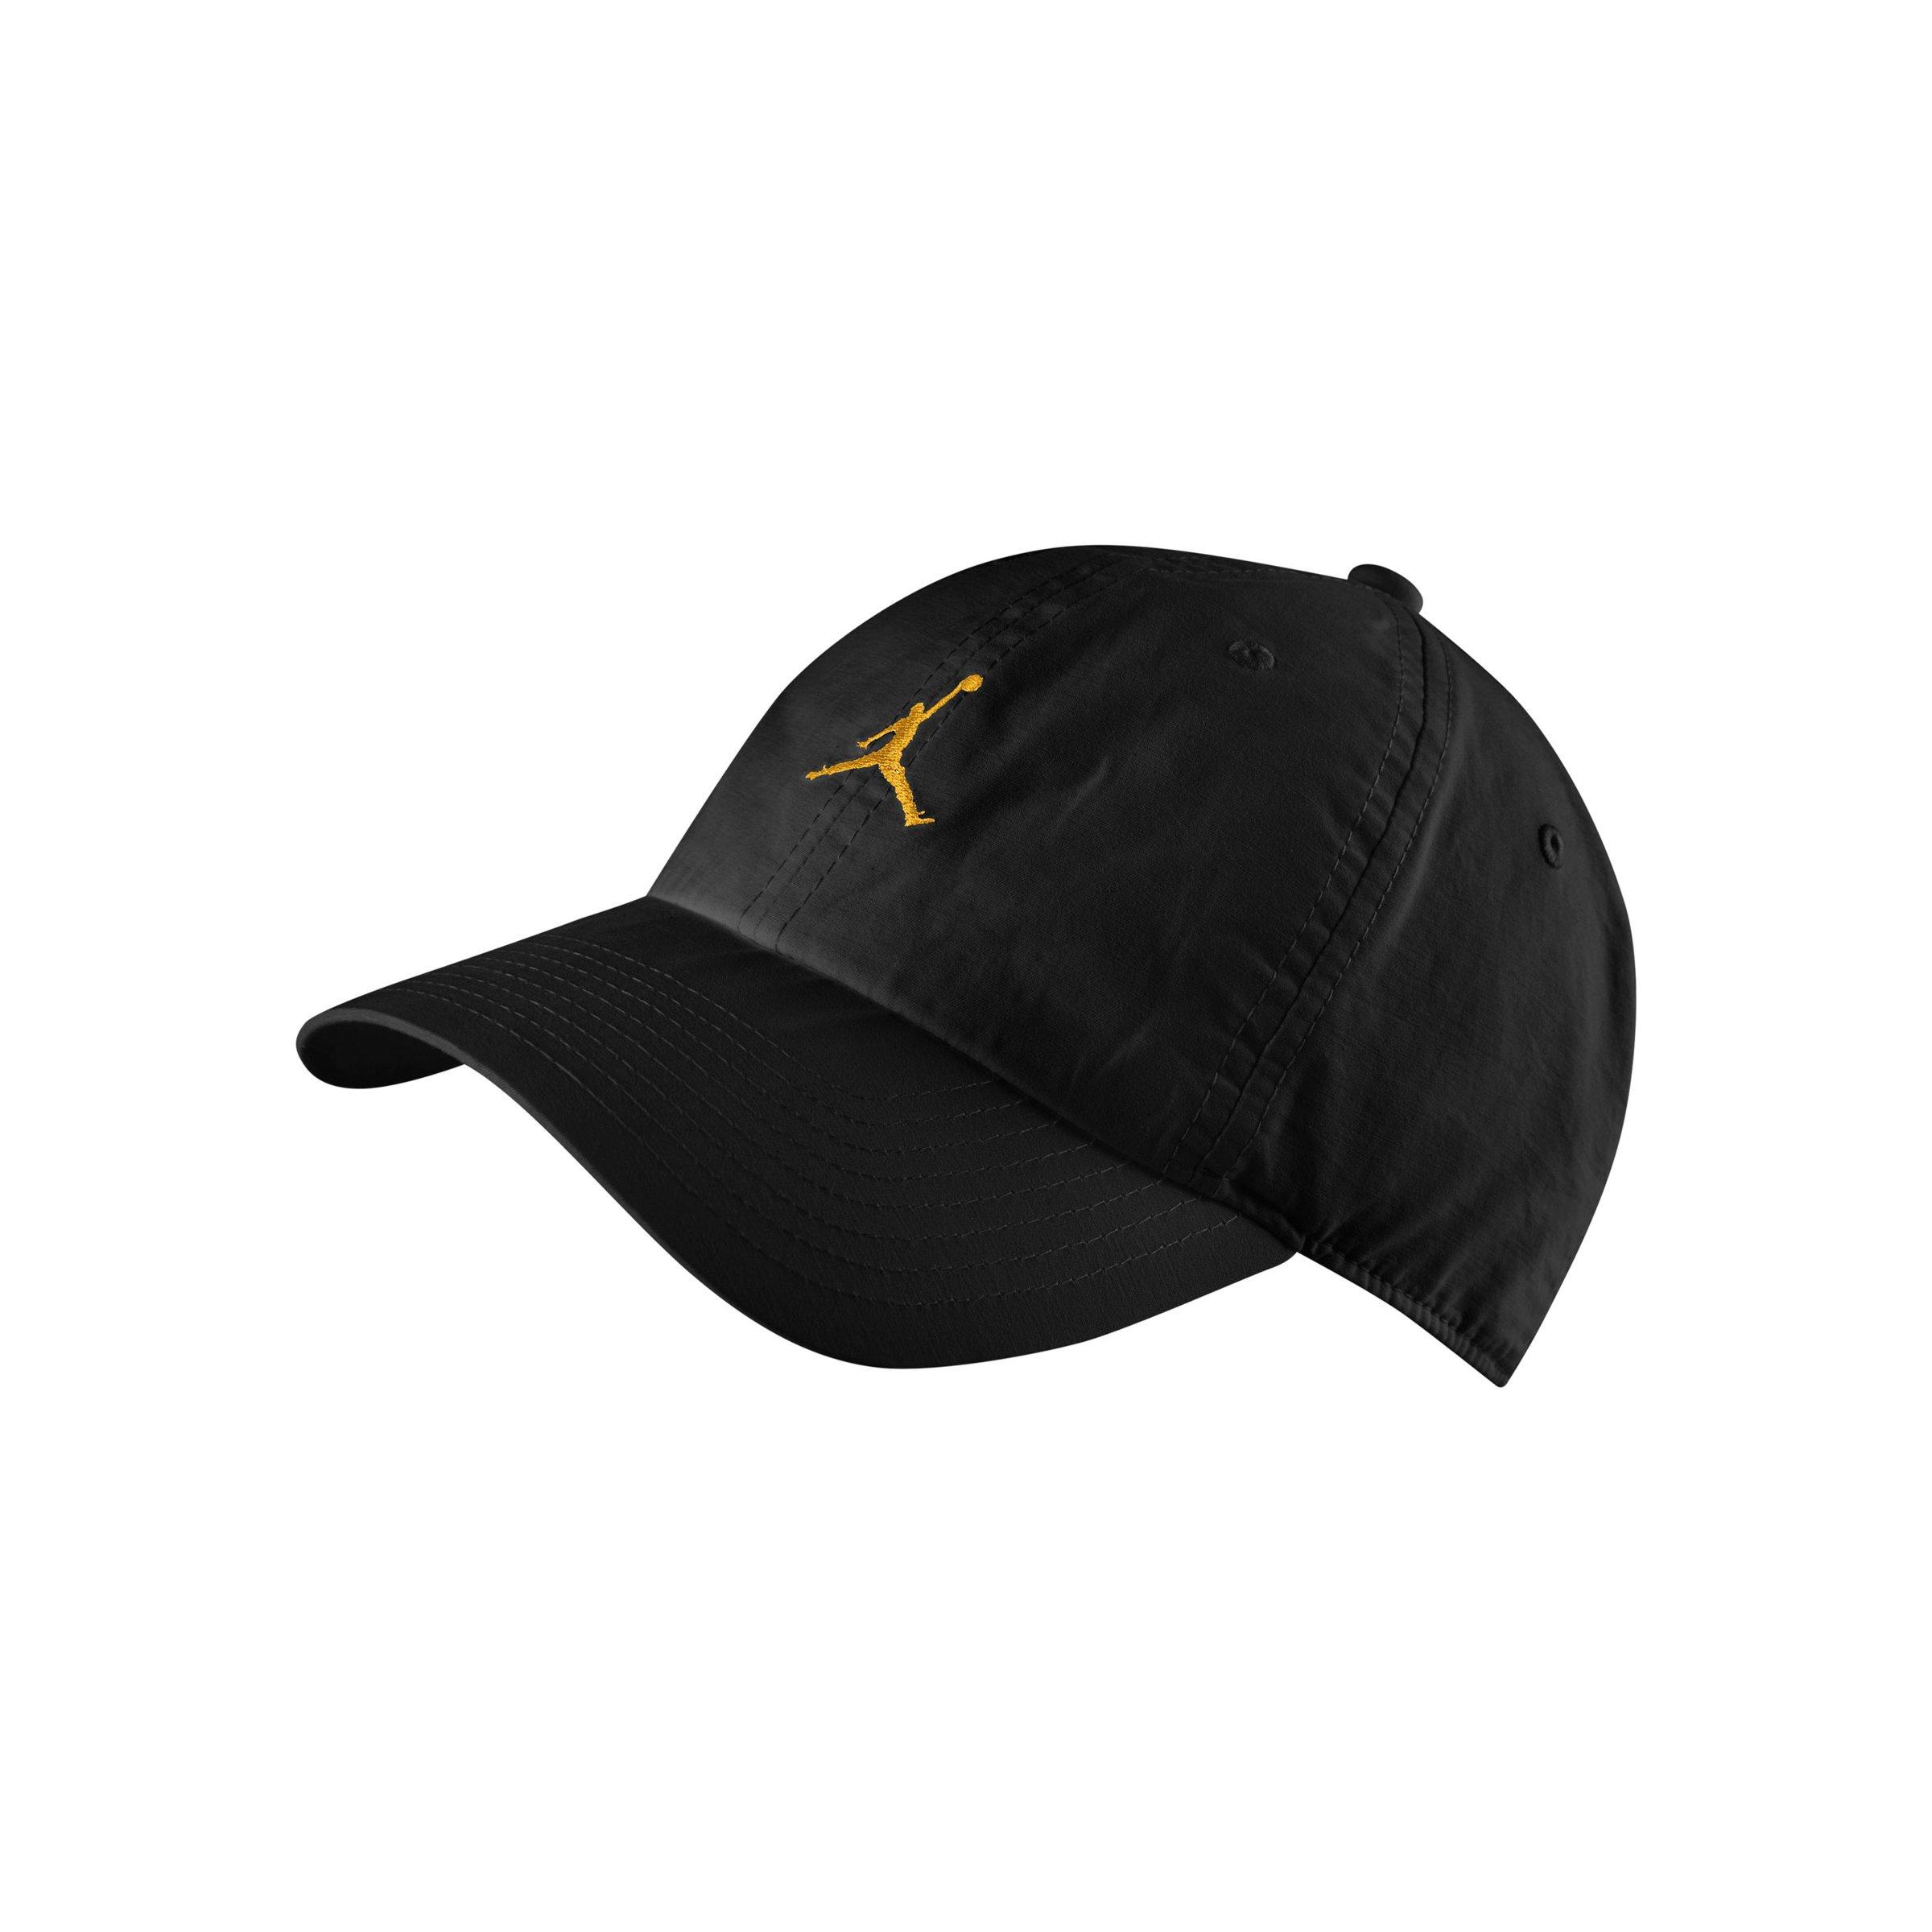 black and yellow jordan hat